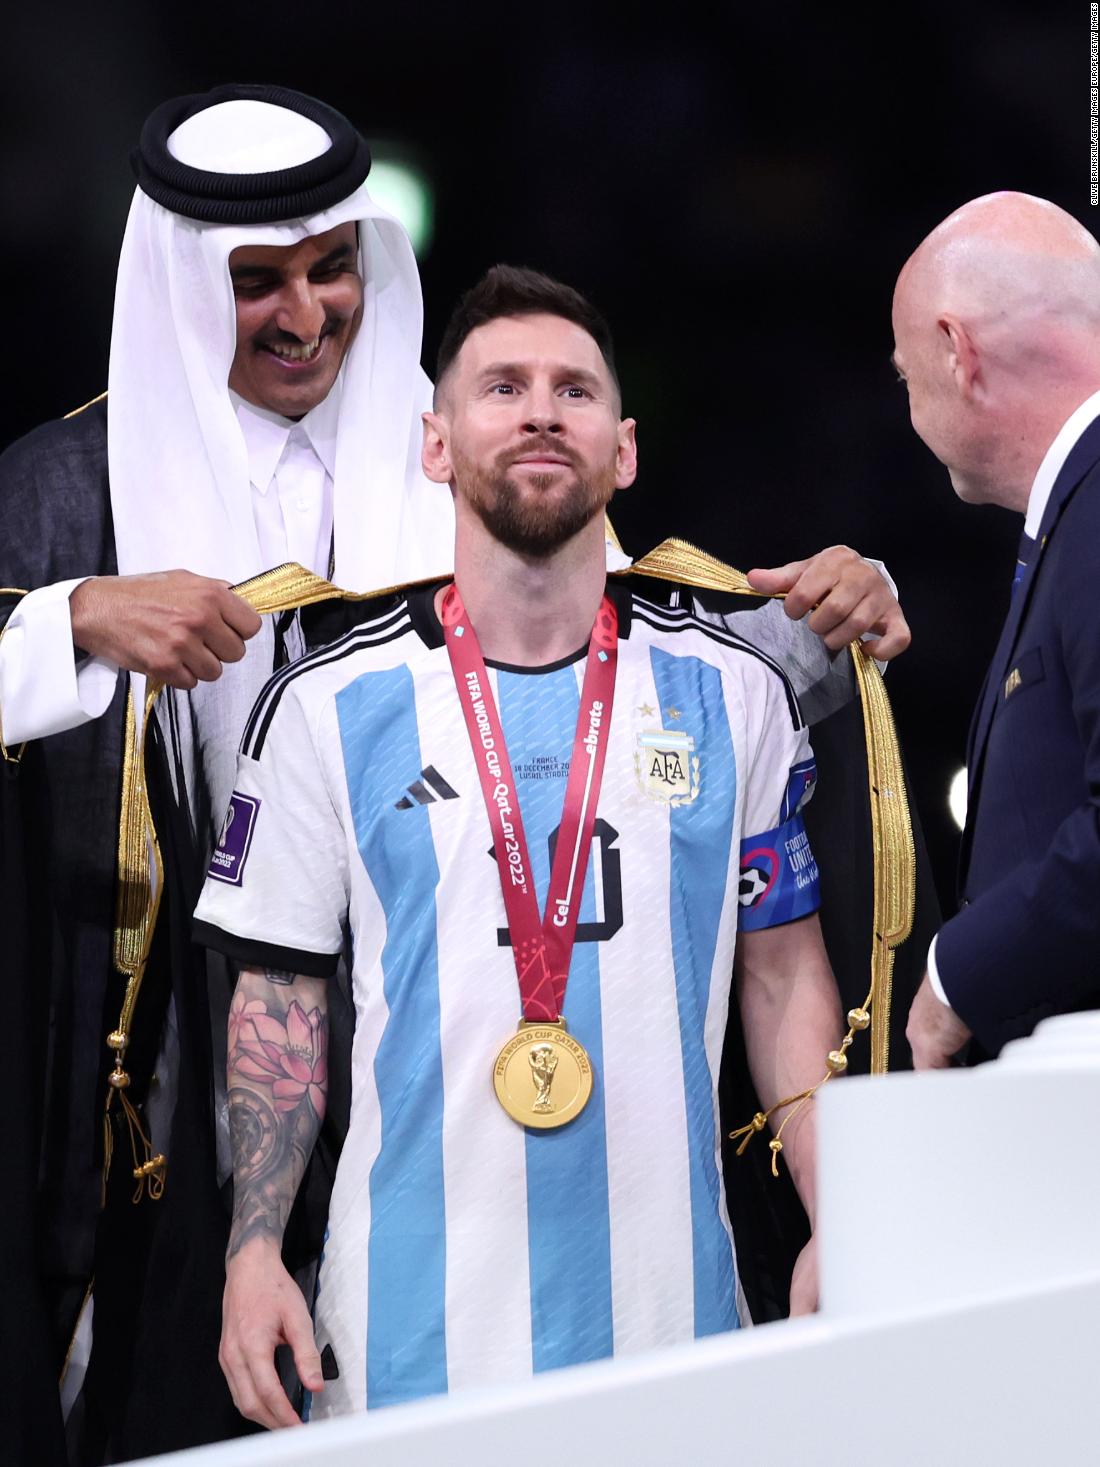 La fiebre por Messi y su camiseta de la selección argentina colapsa el  mercado - CNN Video